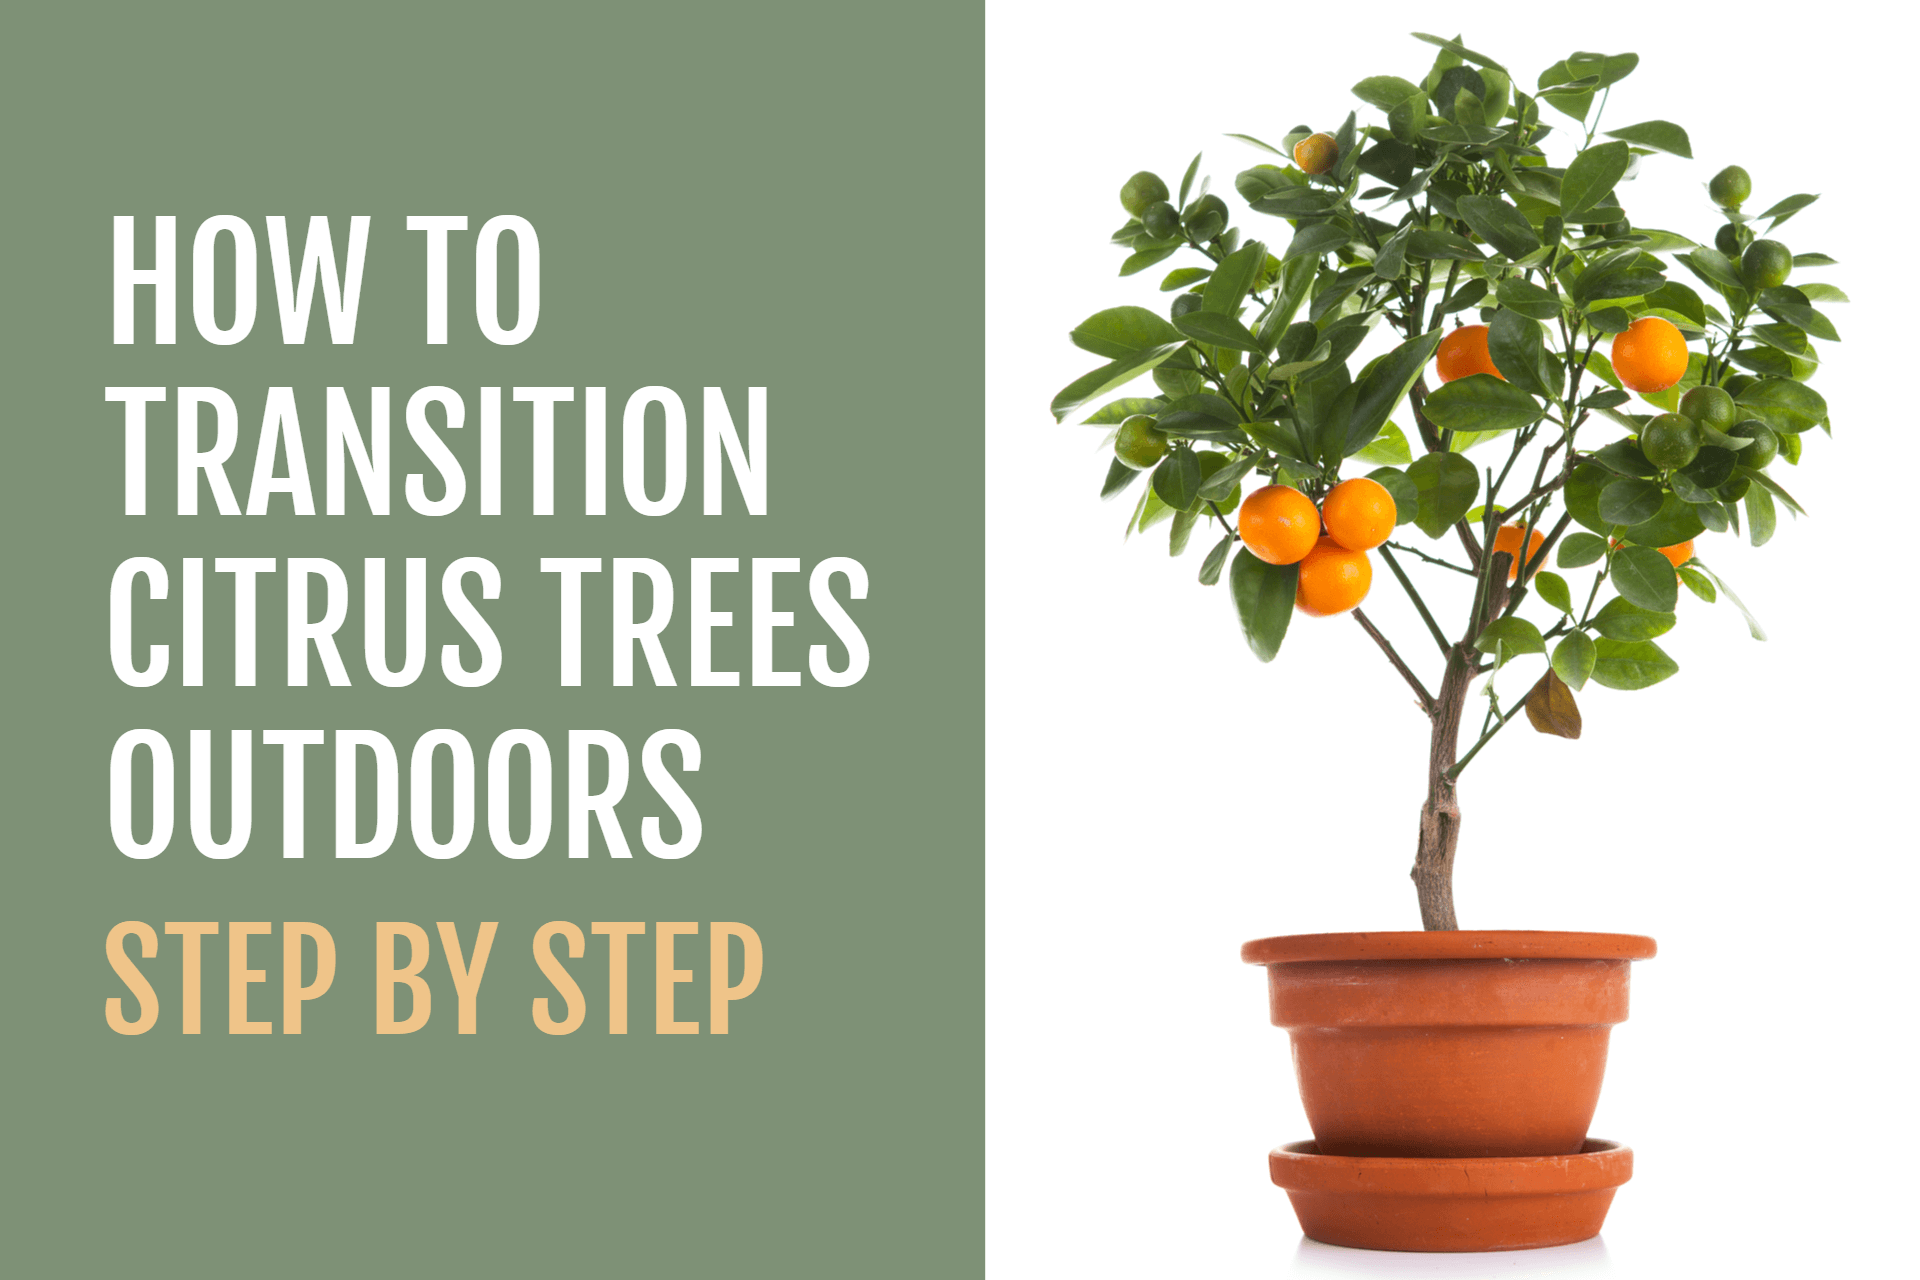 نحوه انتقال درختان مرکبات به فضای باز در بهار | How to Transition Citrus Trees Outdoors in the Spring